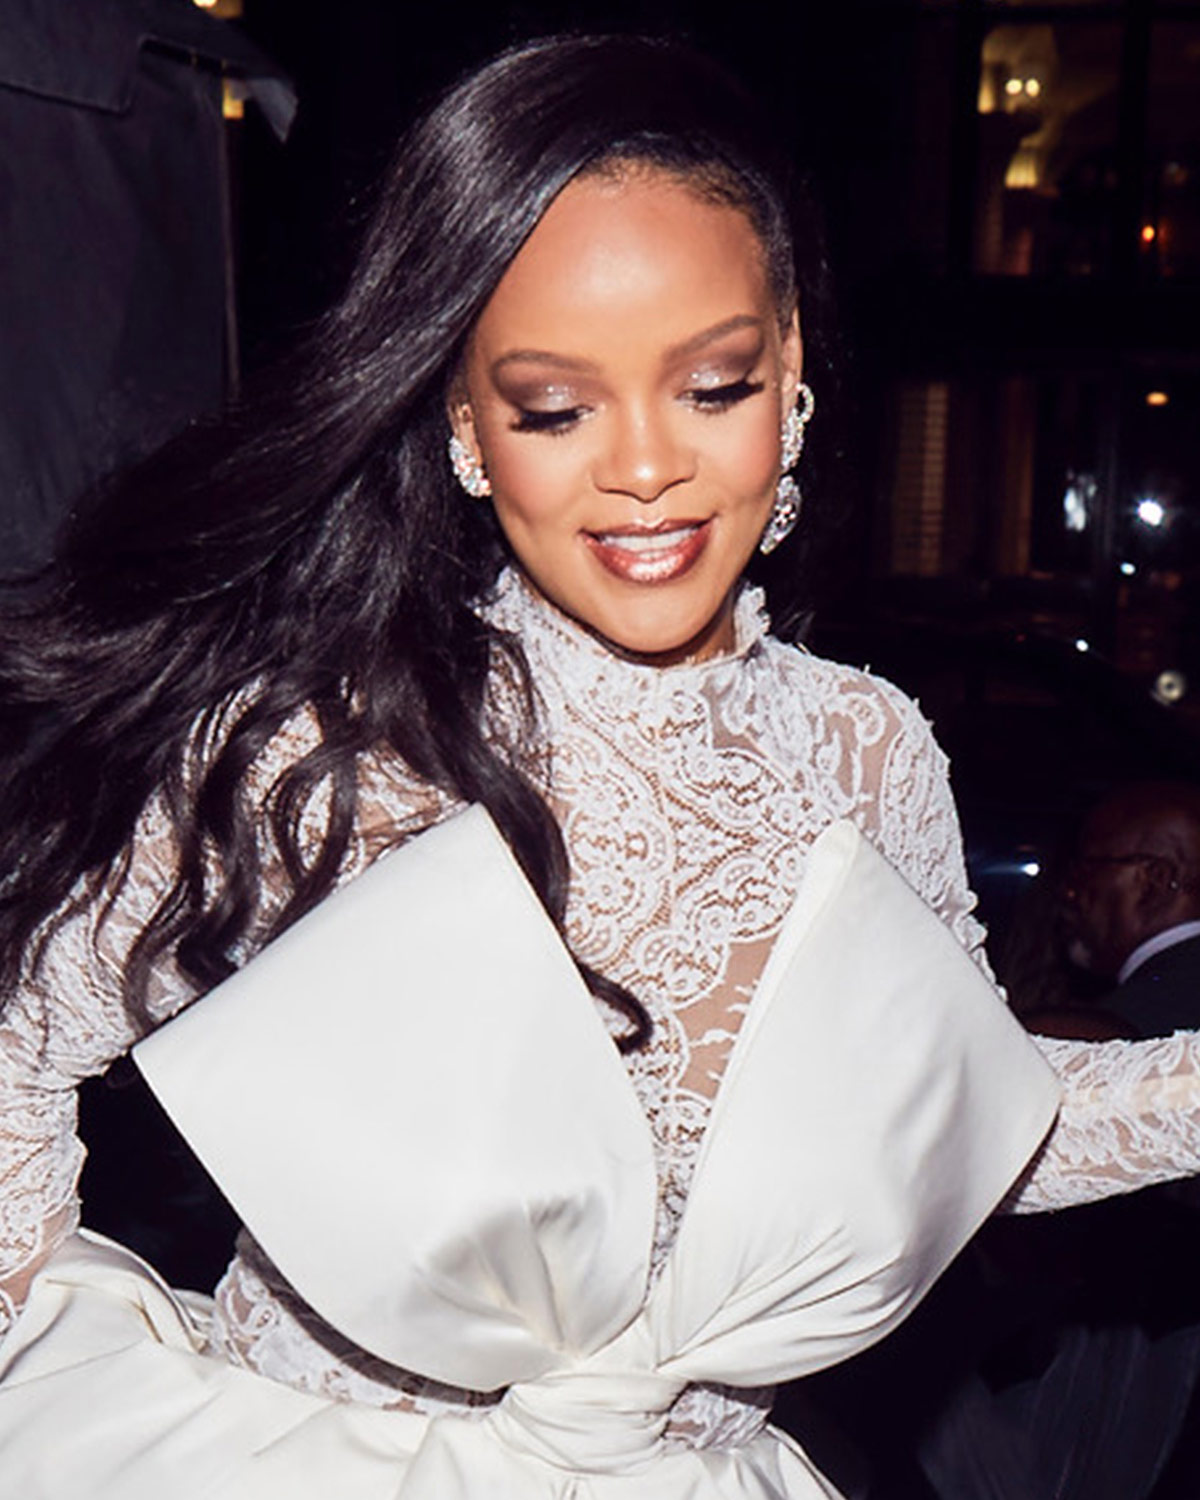 Φαντάζεσαι η Rihanna να σου υπογράψει τα καλλυντικά σου; Μόλις το έκανε! – TLIFE